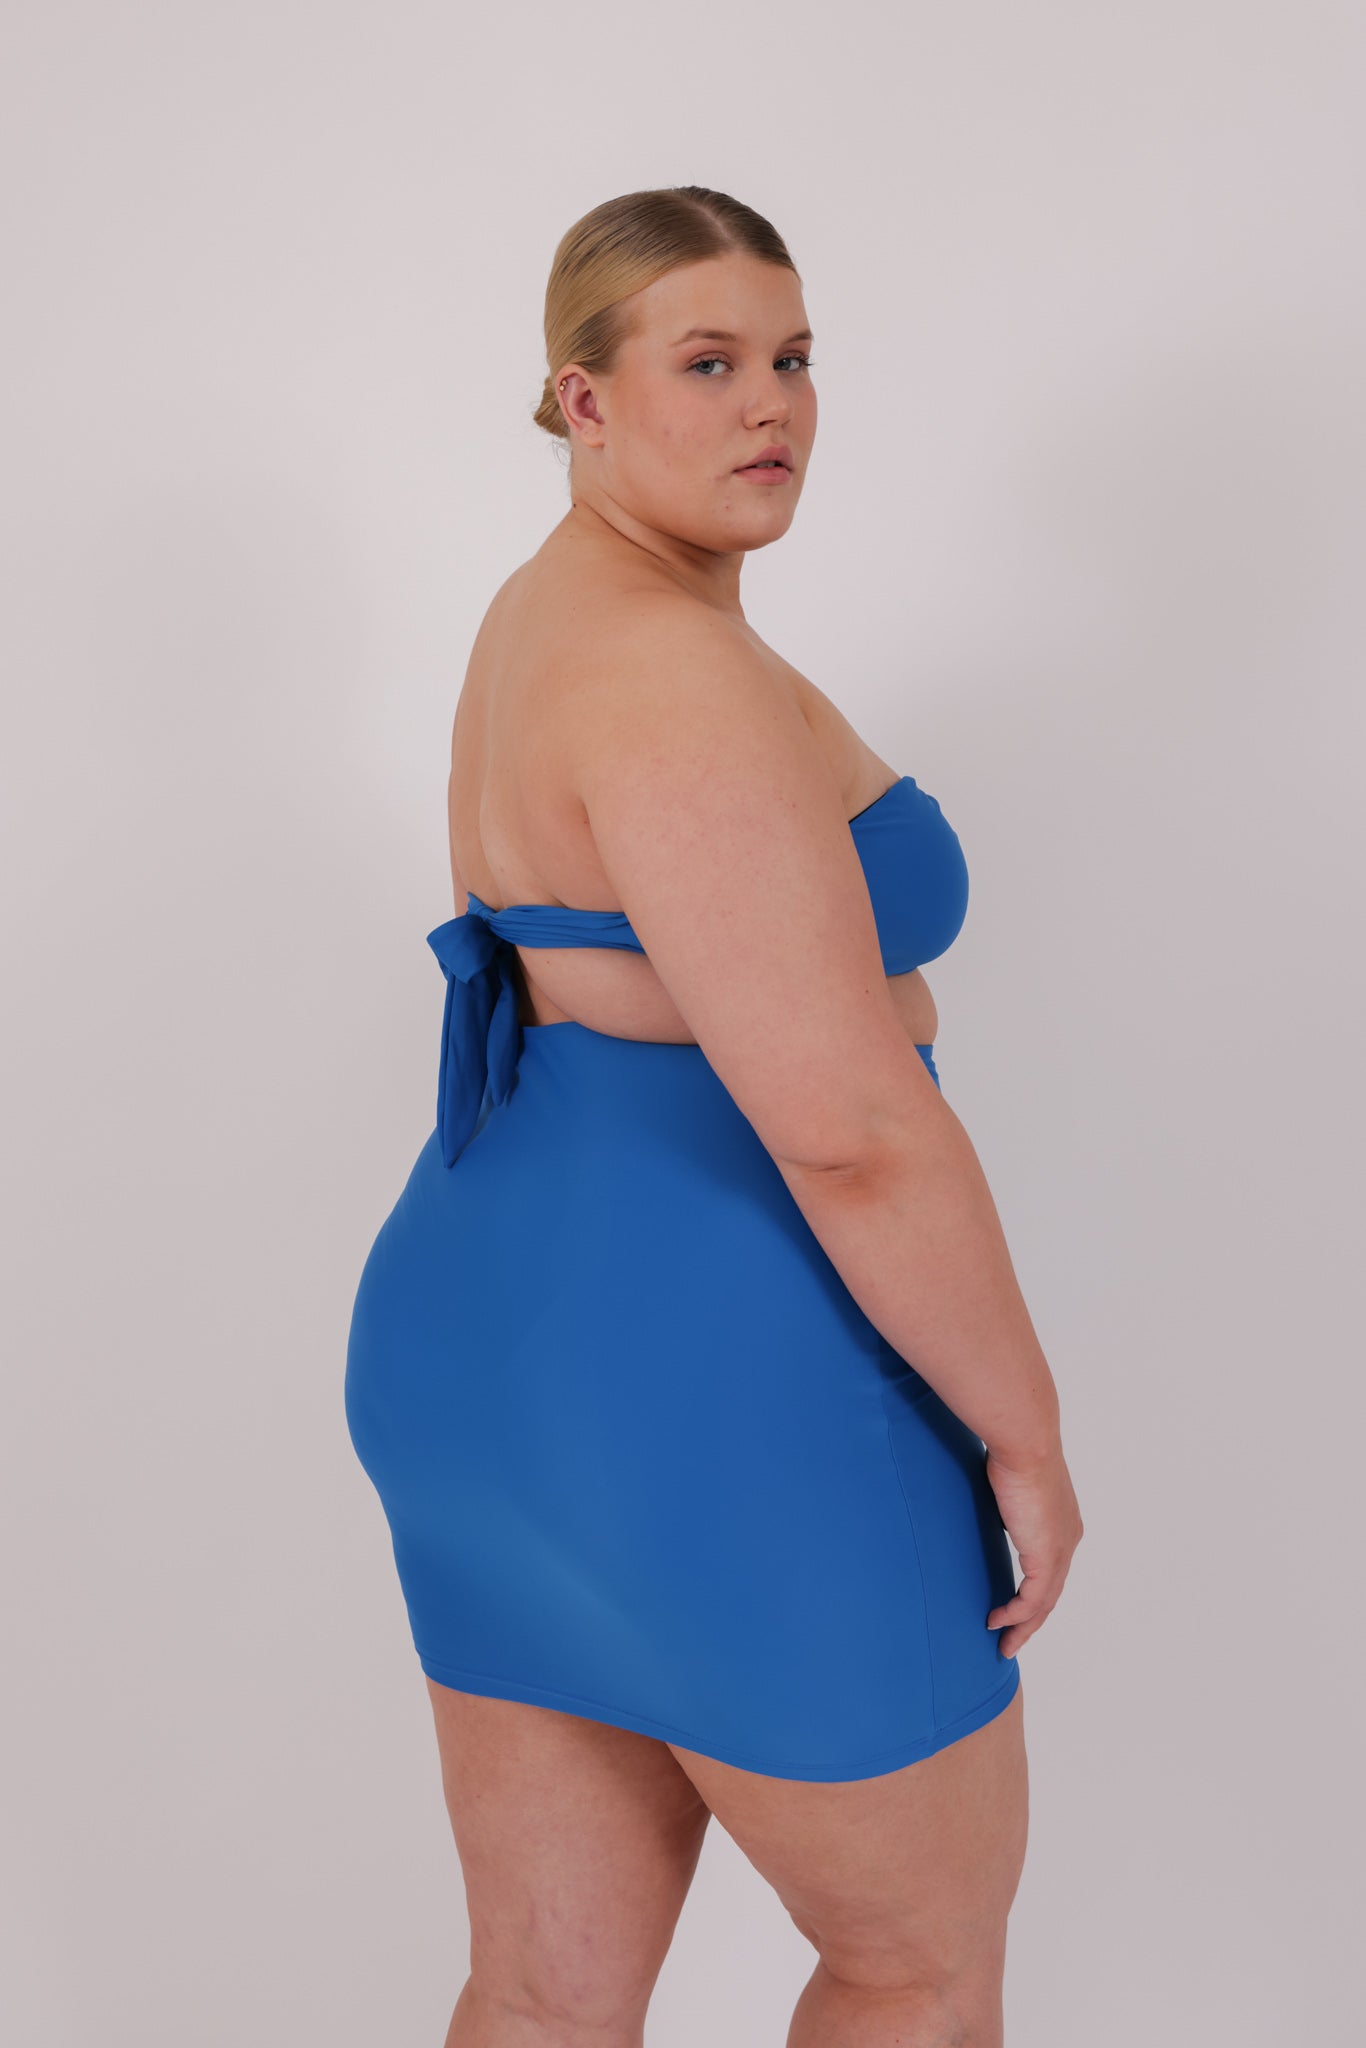 blue strapless bikini in model